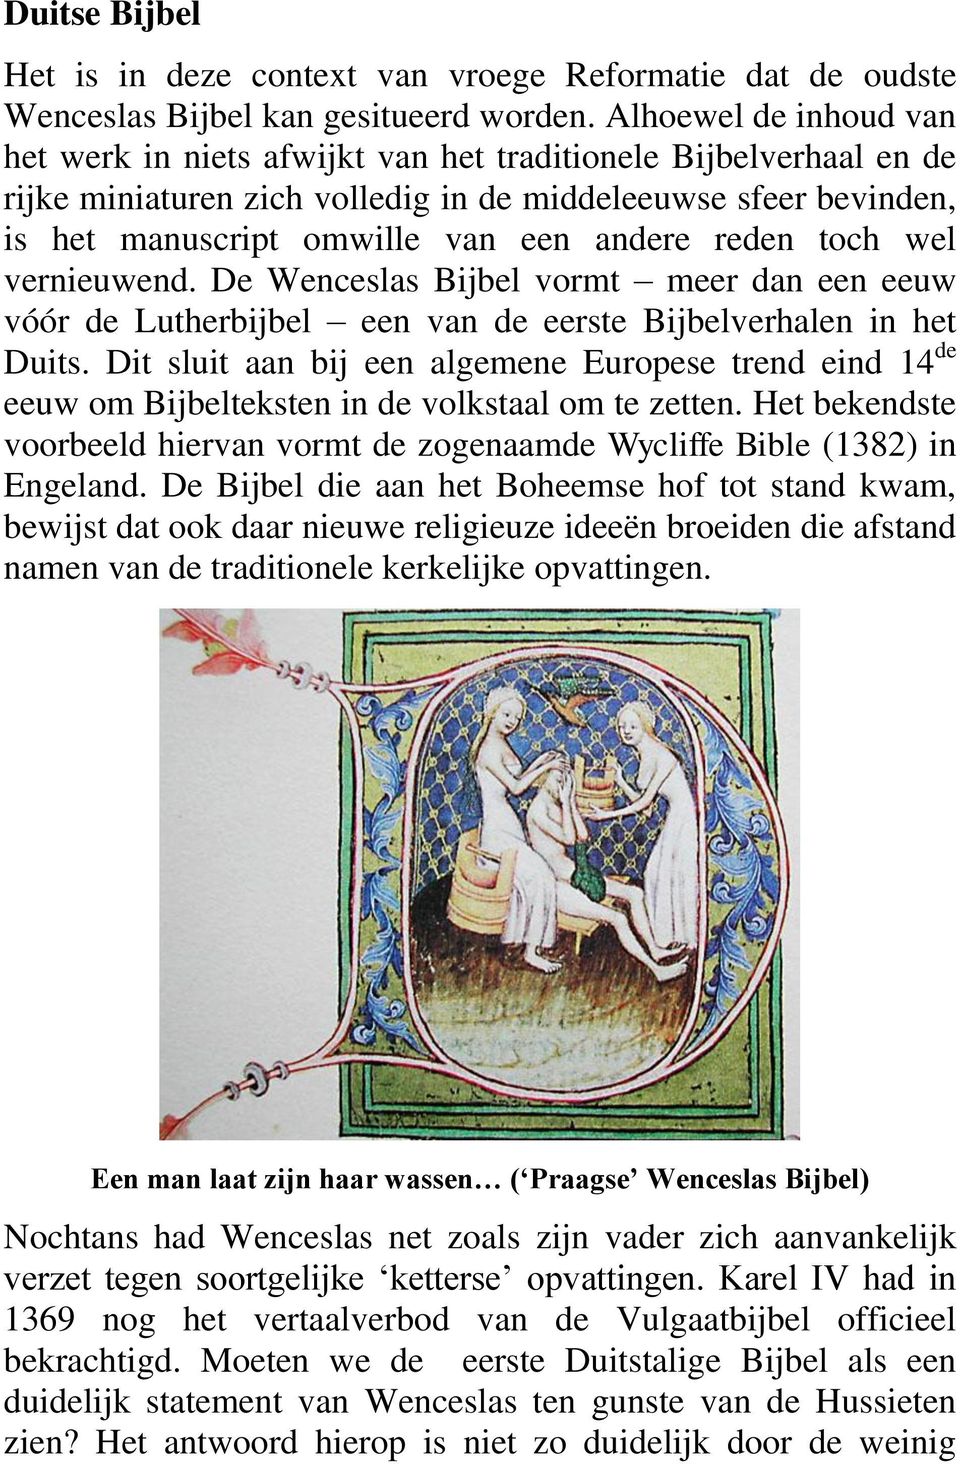 reden toch wel vernieuwend. De Wenceslas Bijbel vormt meer dan een eeuw vóór de Lutherbijbel een van de eerste Bijbelverhalen in het Duits.